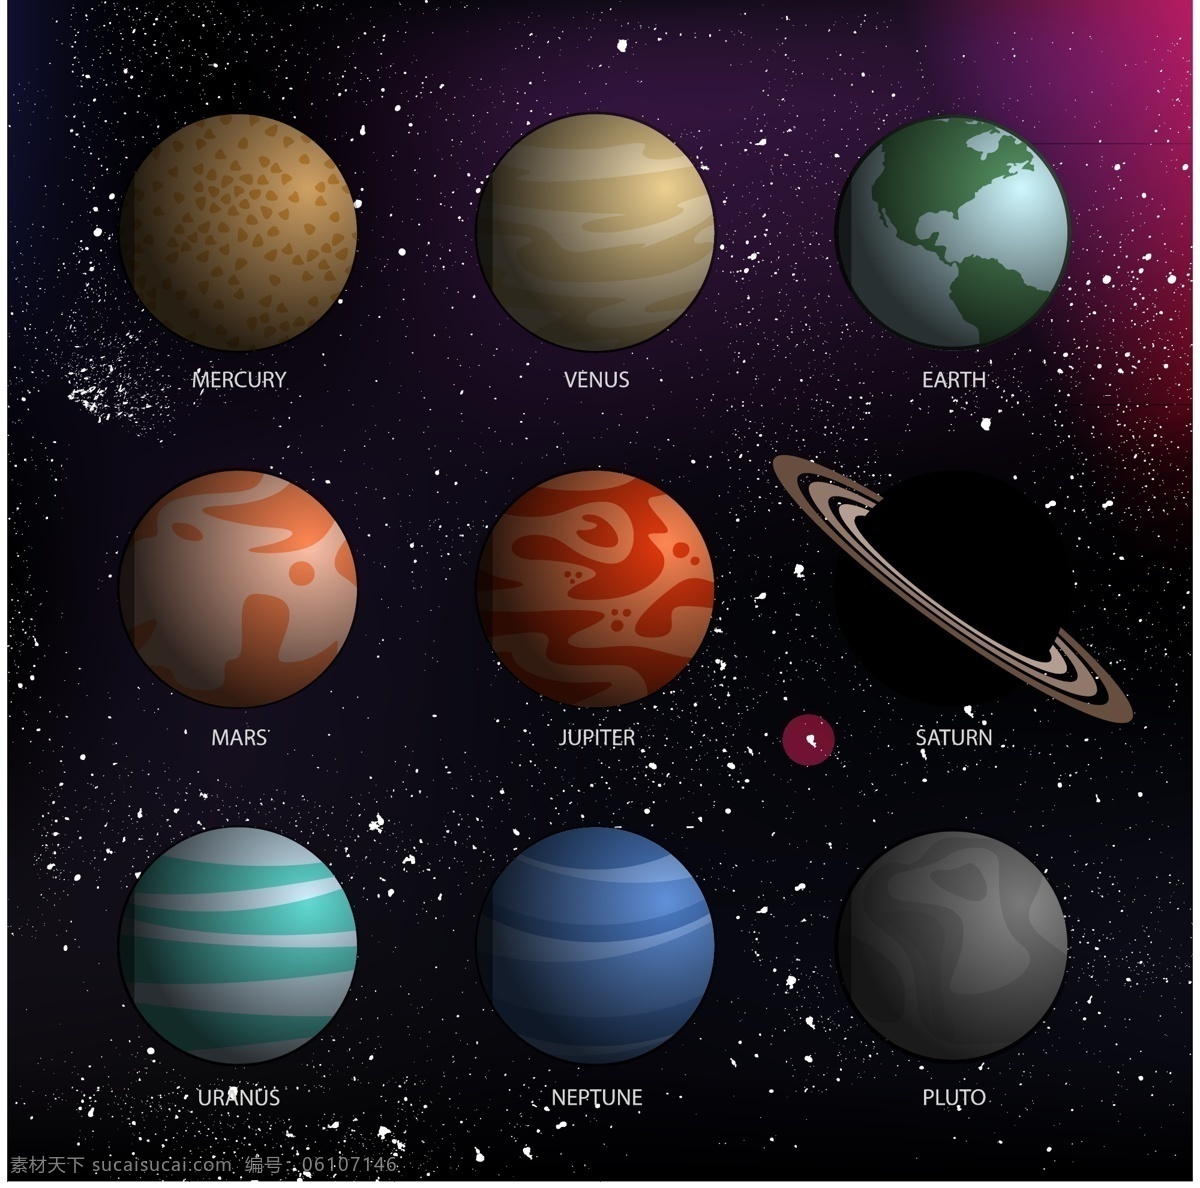 八大 行星 主题 创意 矢量图 天文 地理 太空 星球 地球 太阳 太阳系 星空 宇宙 水星 金星 火星 木星 土星 天王星 海王星 冥王星 彗星